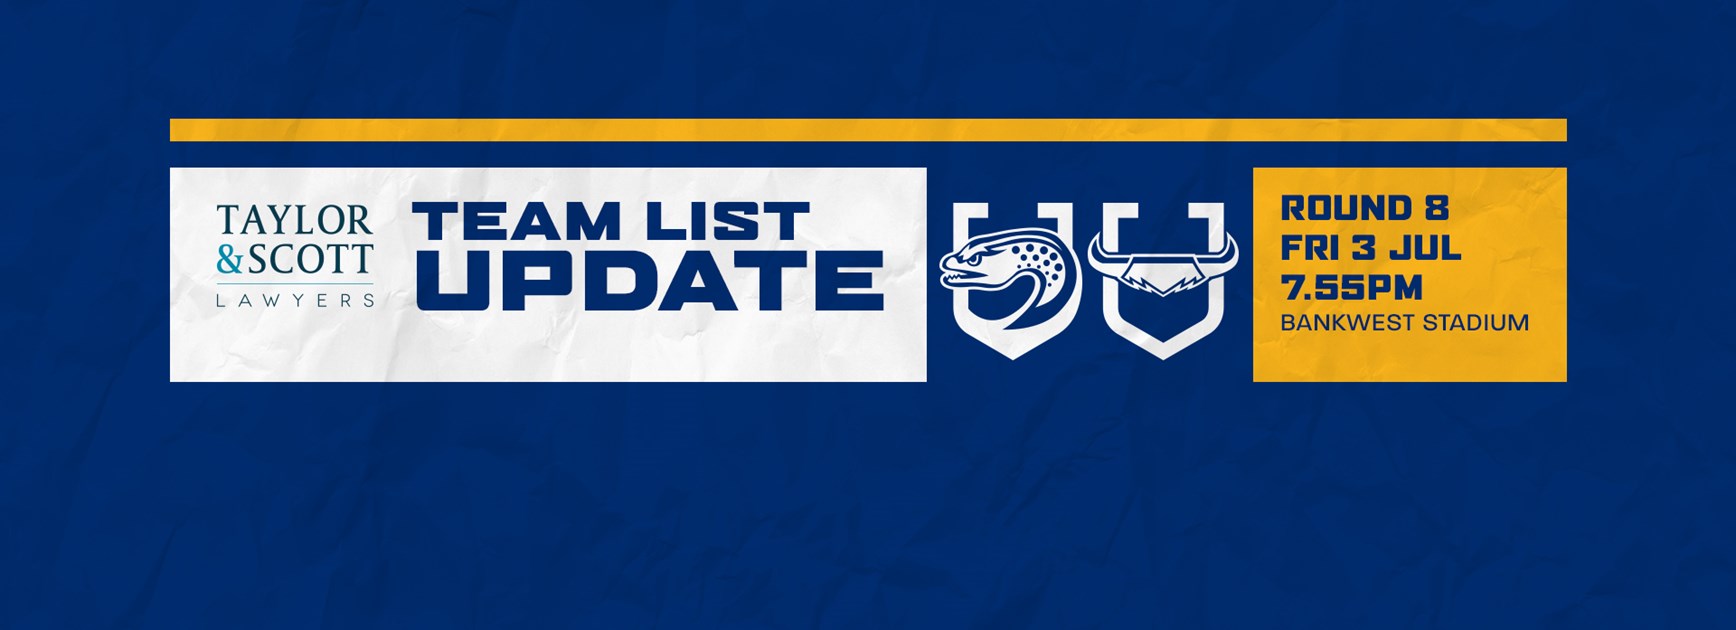 Team List Update: Eels v Cowboys, Round Eight